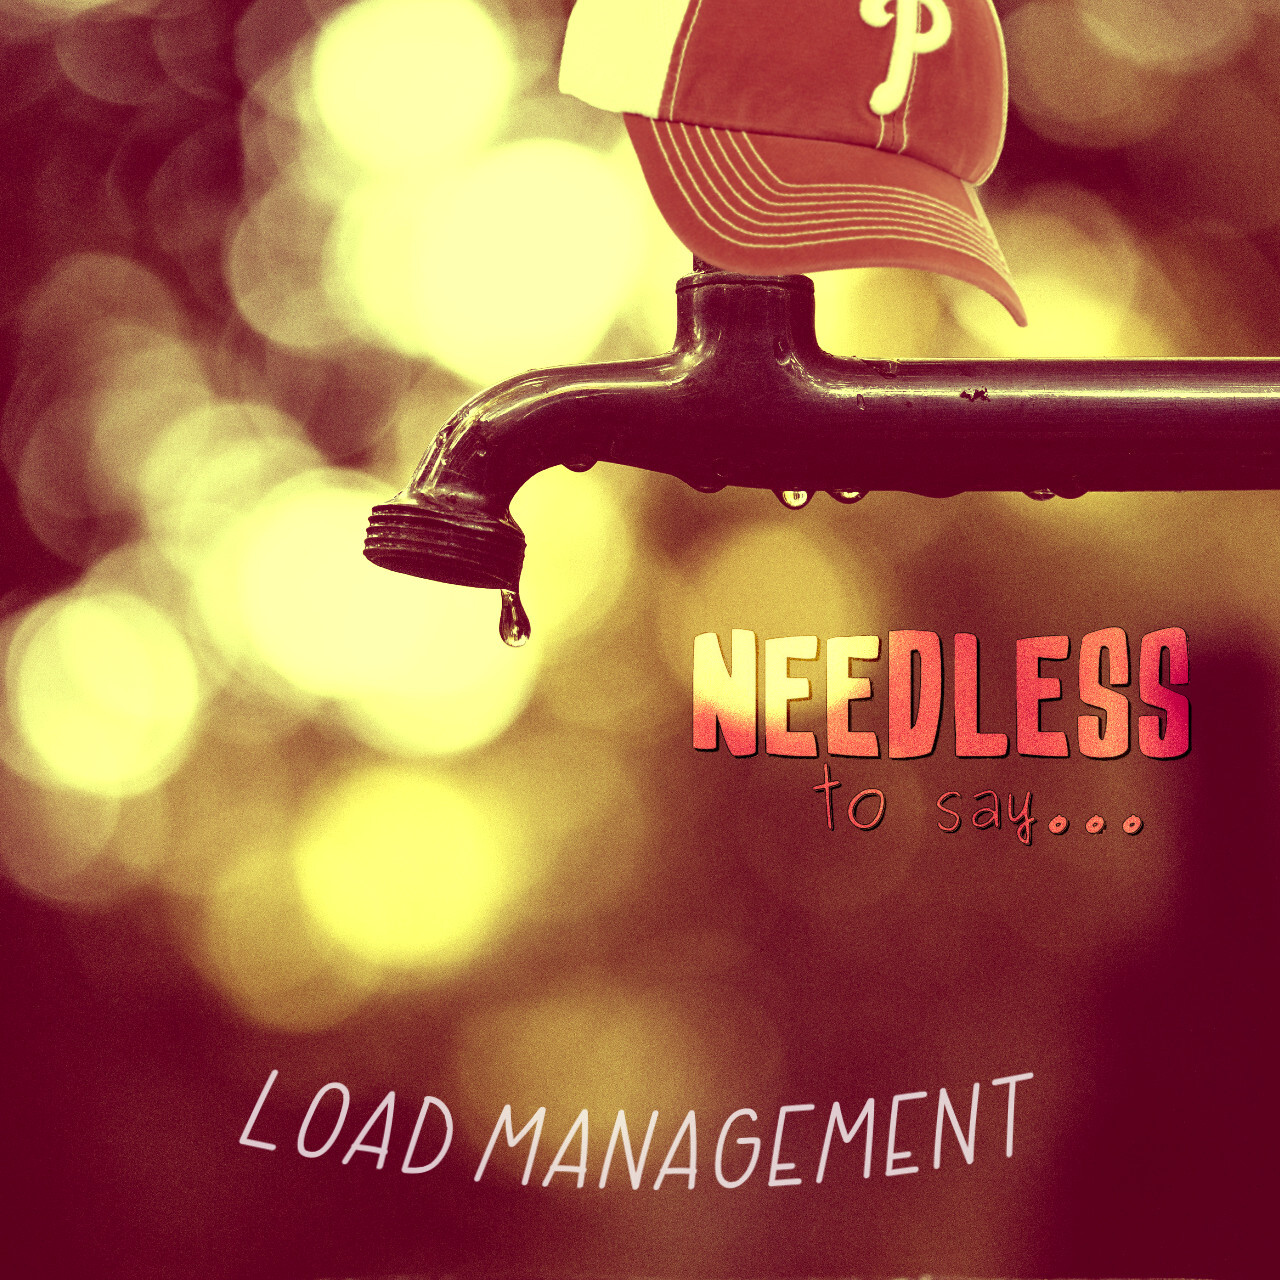 Load Management Image